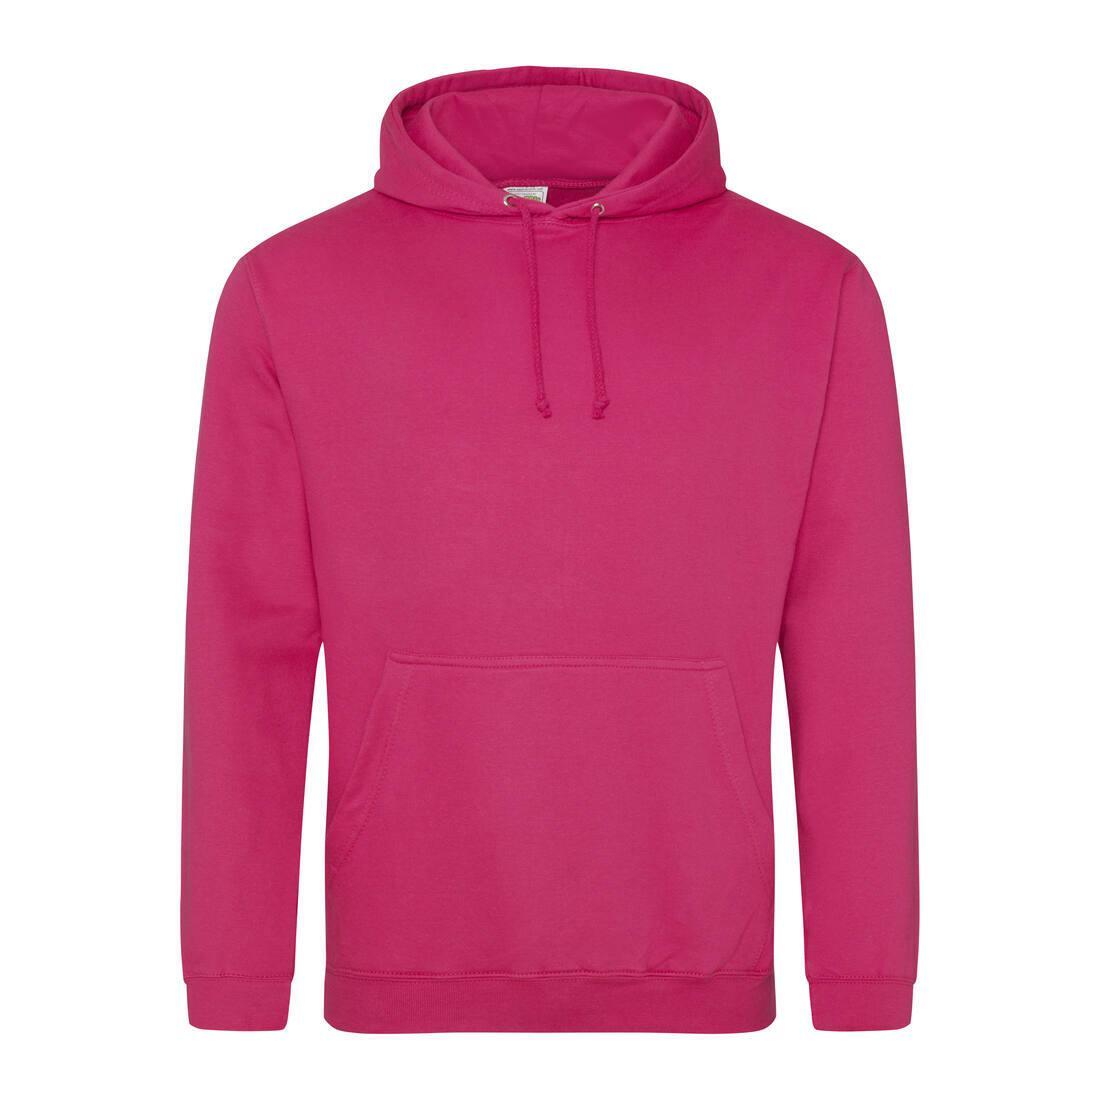 Heren hoodie hot pink perfect voor bedrukking van logo, tekst, foto